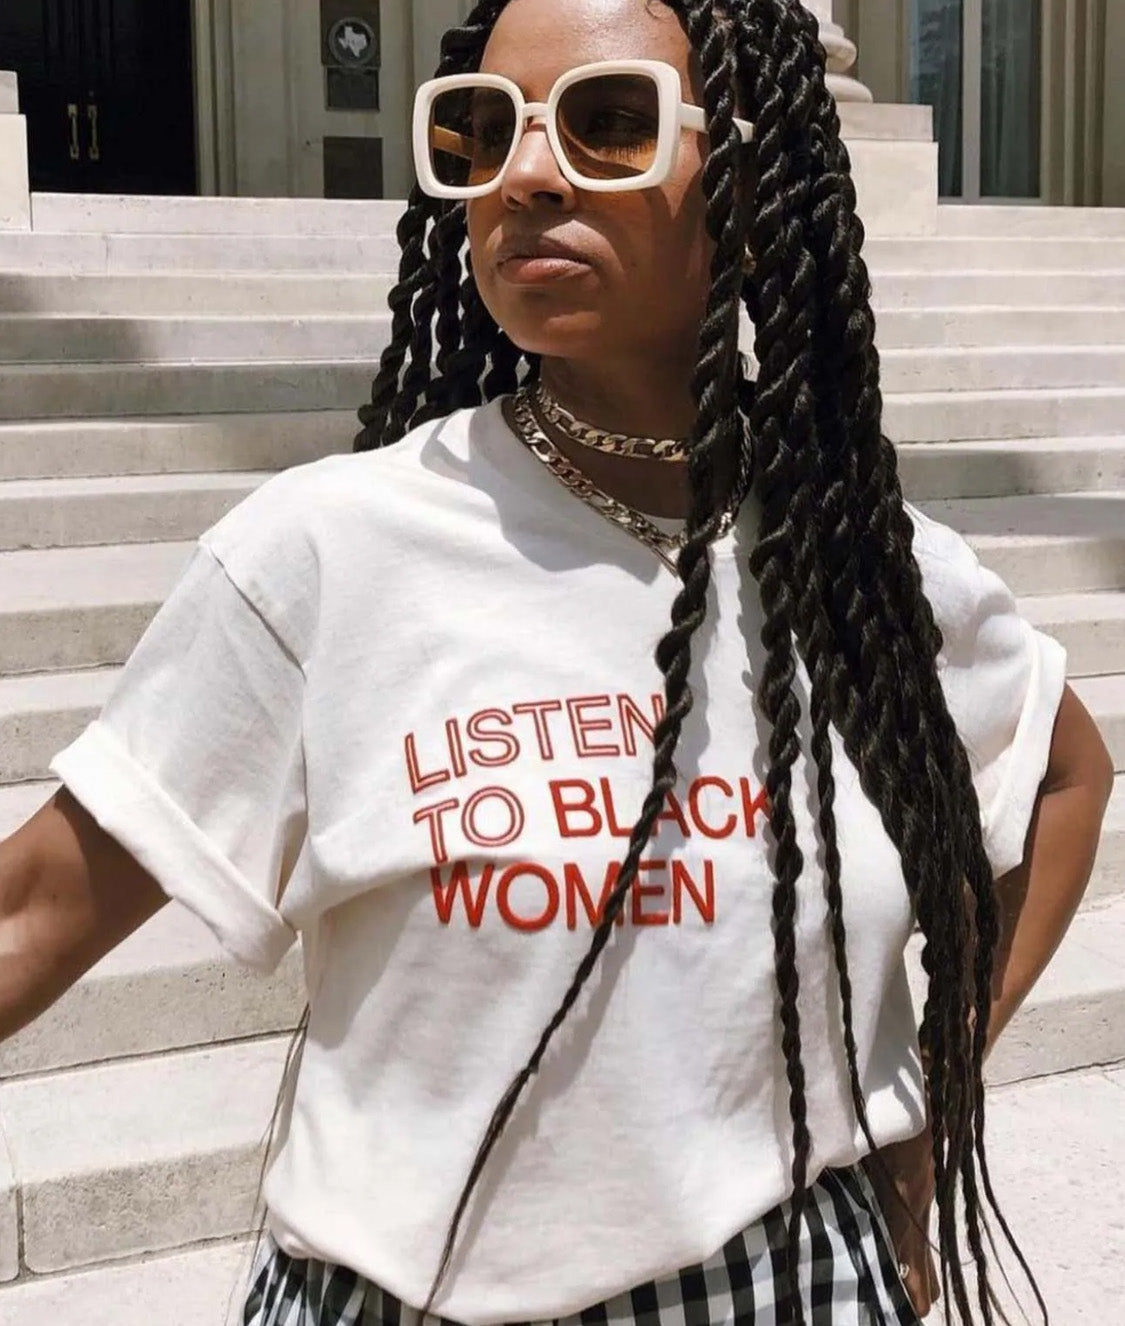 Listen To Black Women